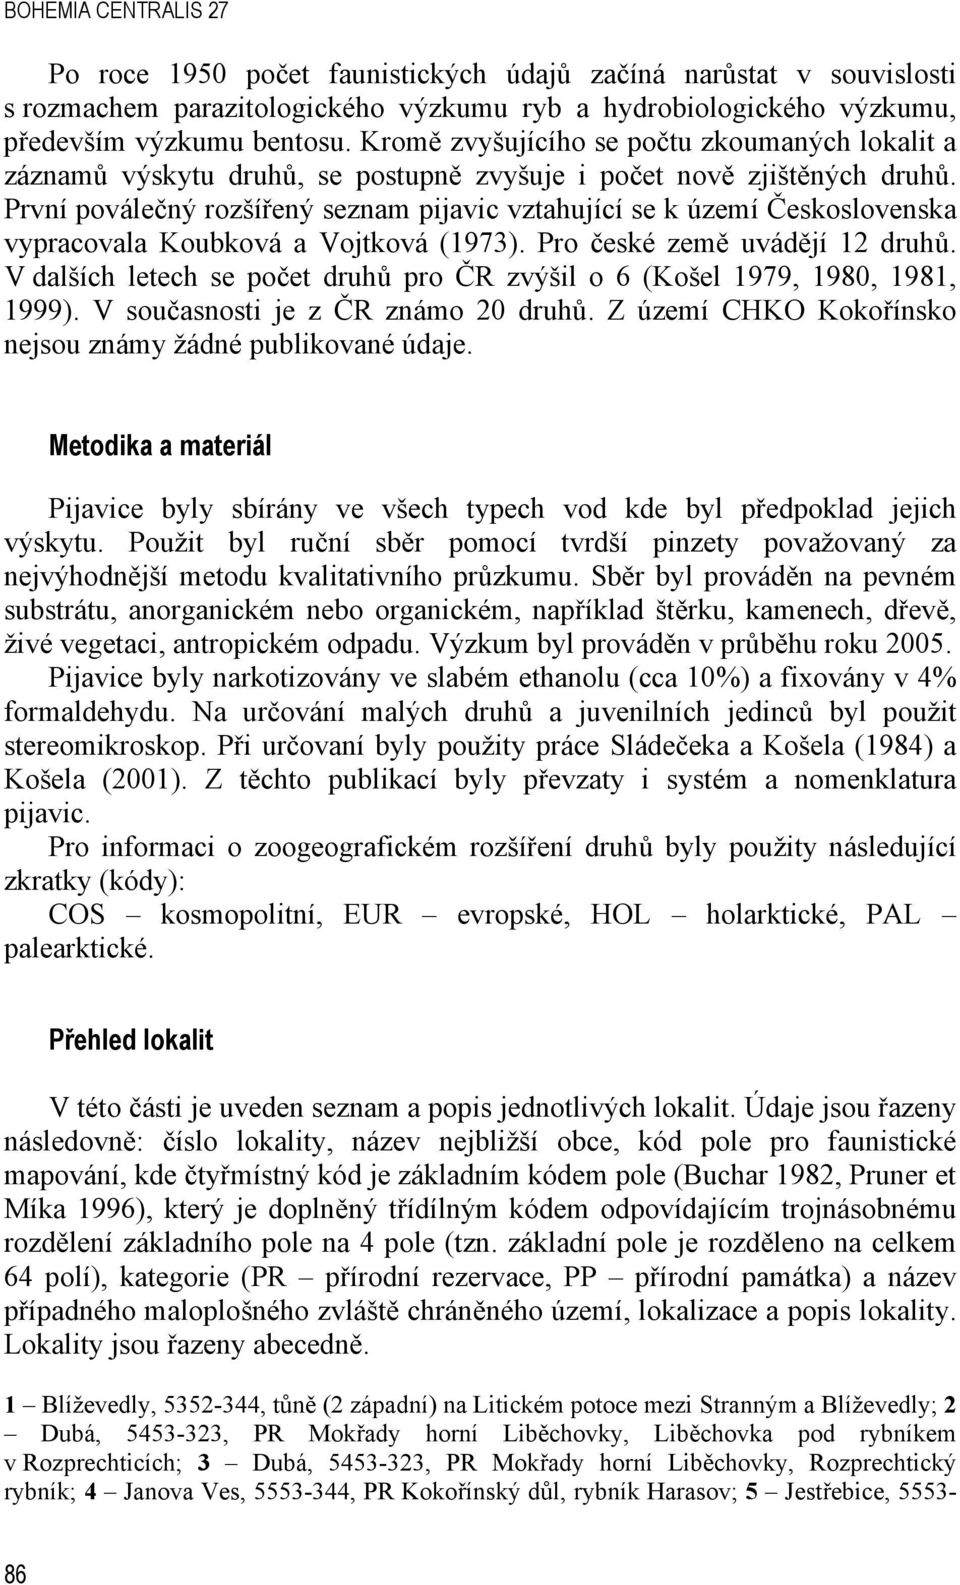 První poválečný rozšířený seznam pijavic vztahující se k území Československa vypracovala Koubková a Vojtková (1973). Pro české země uvádějí 12 druhů.